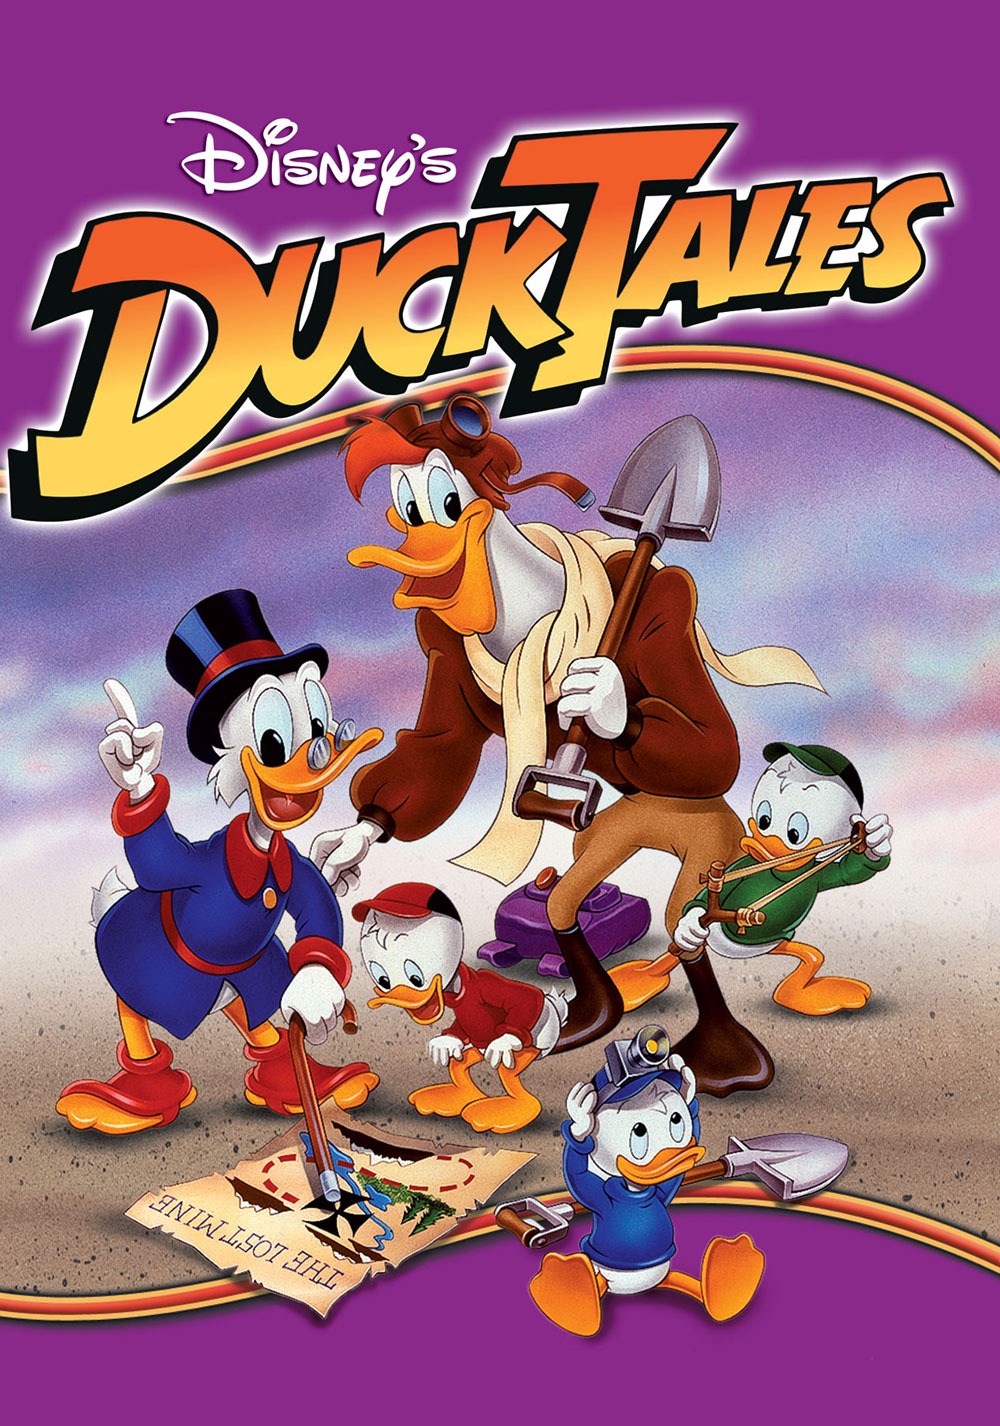 Picture Disneys Ducktales Image Wallpaper